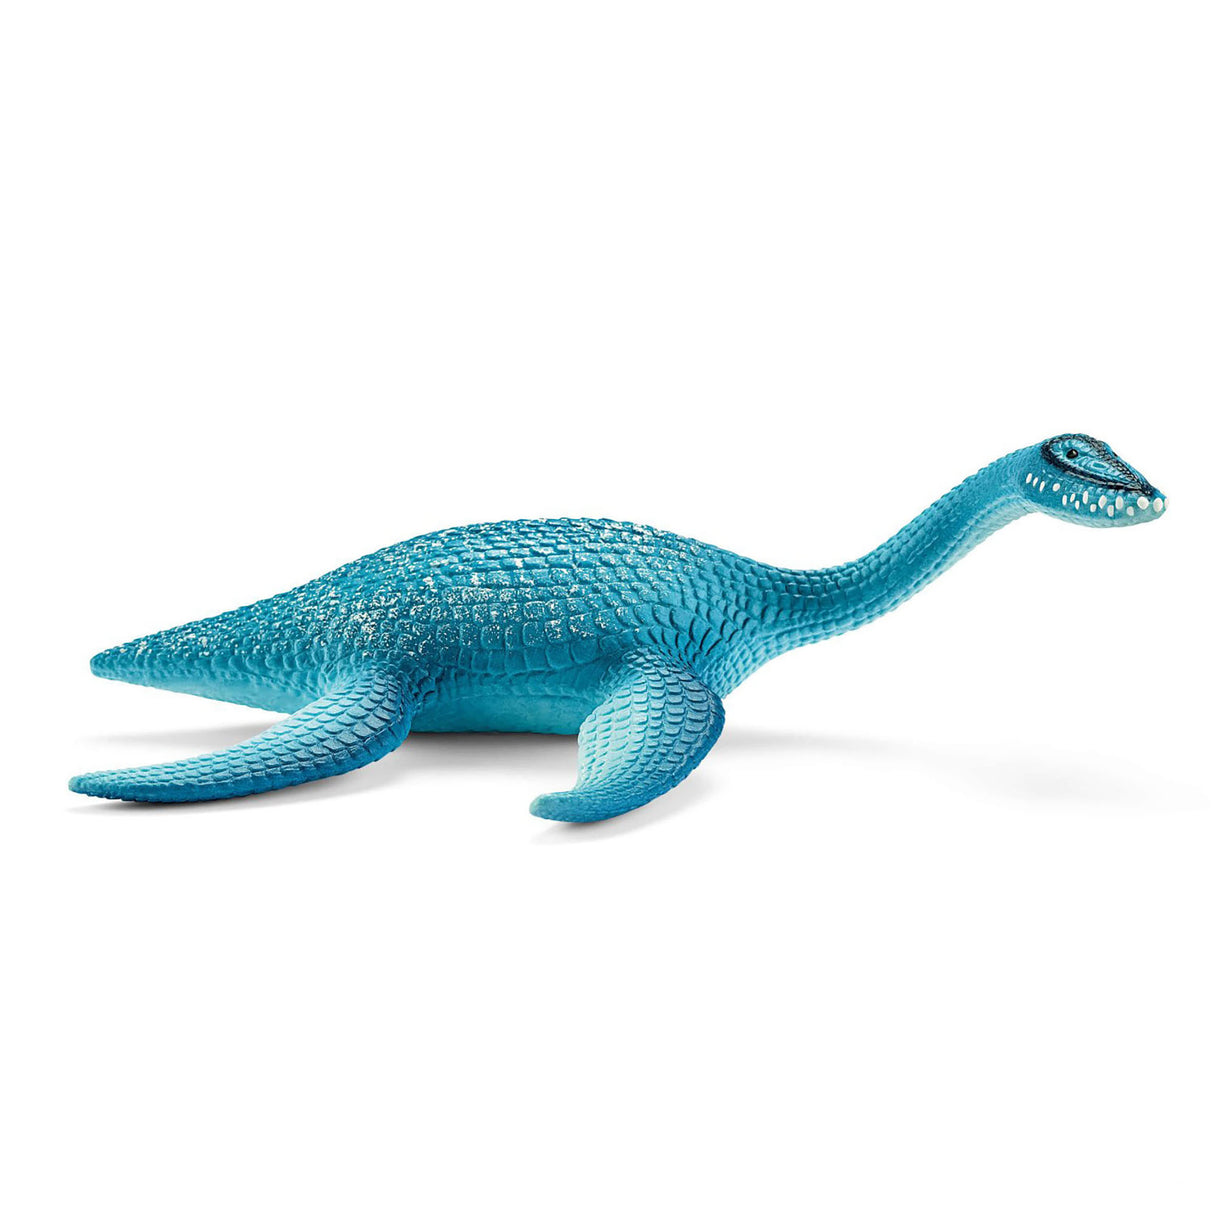 Schleich Plesiosaurus Dinosaur Figure